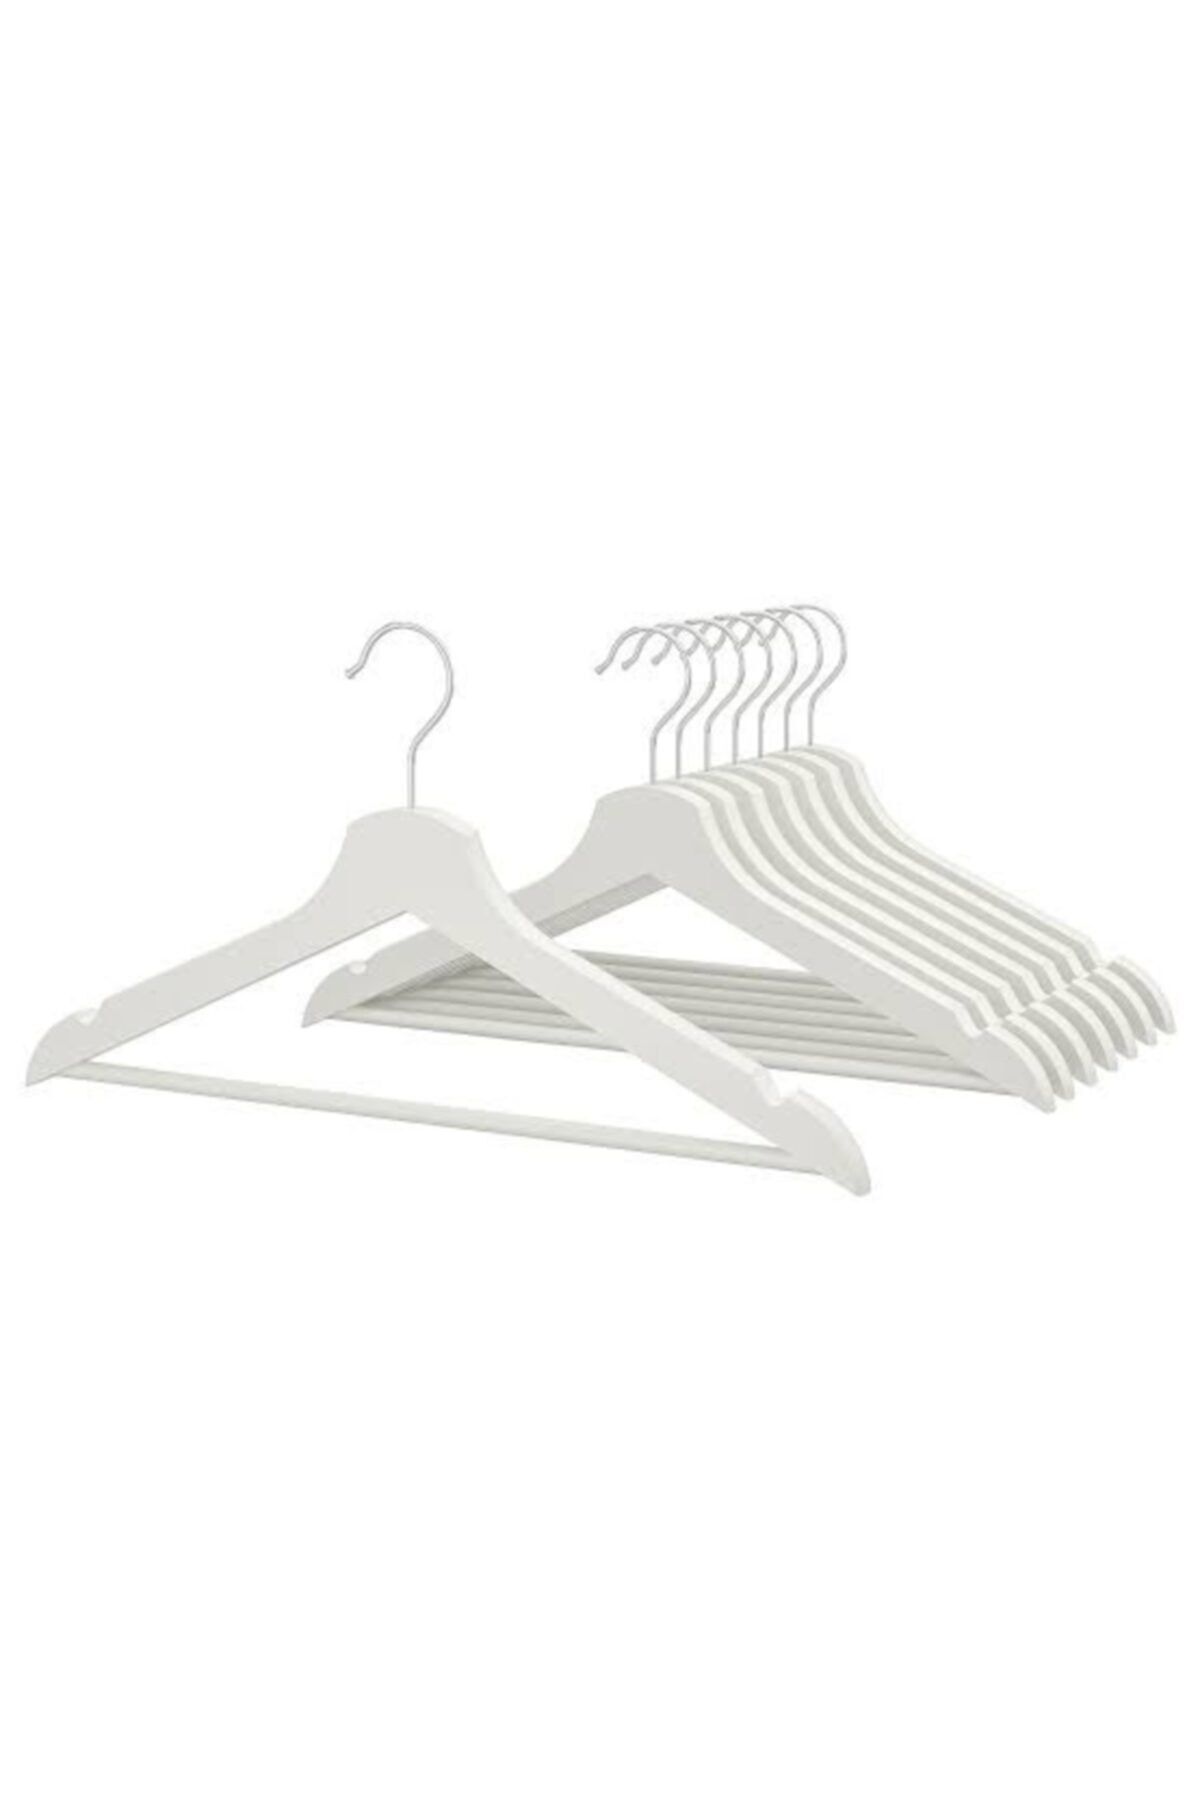 BARBUN 8 Adet Bumerang Askı Masif Ahşap Takım Elbise Kıyafet Askısı - Beyaz